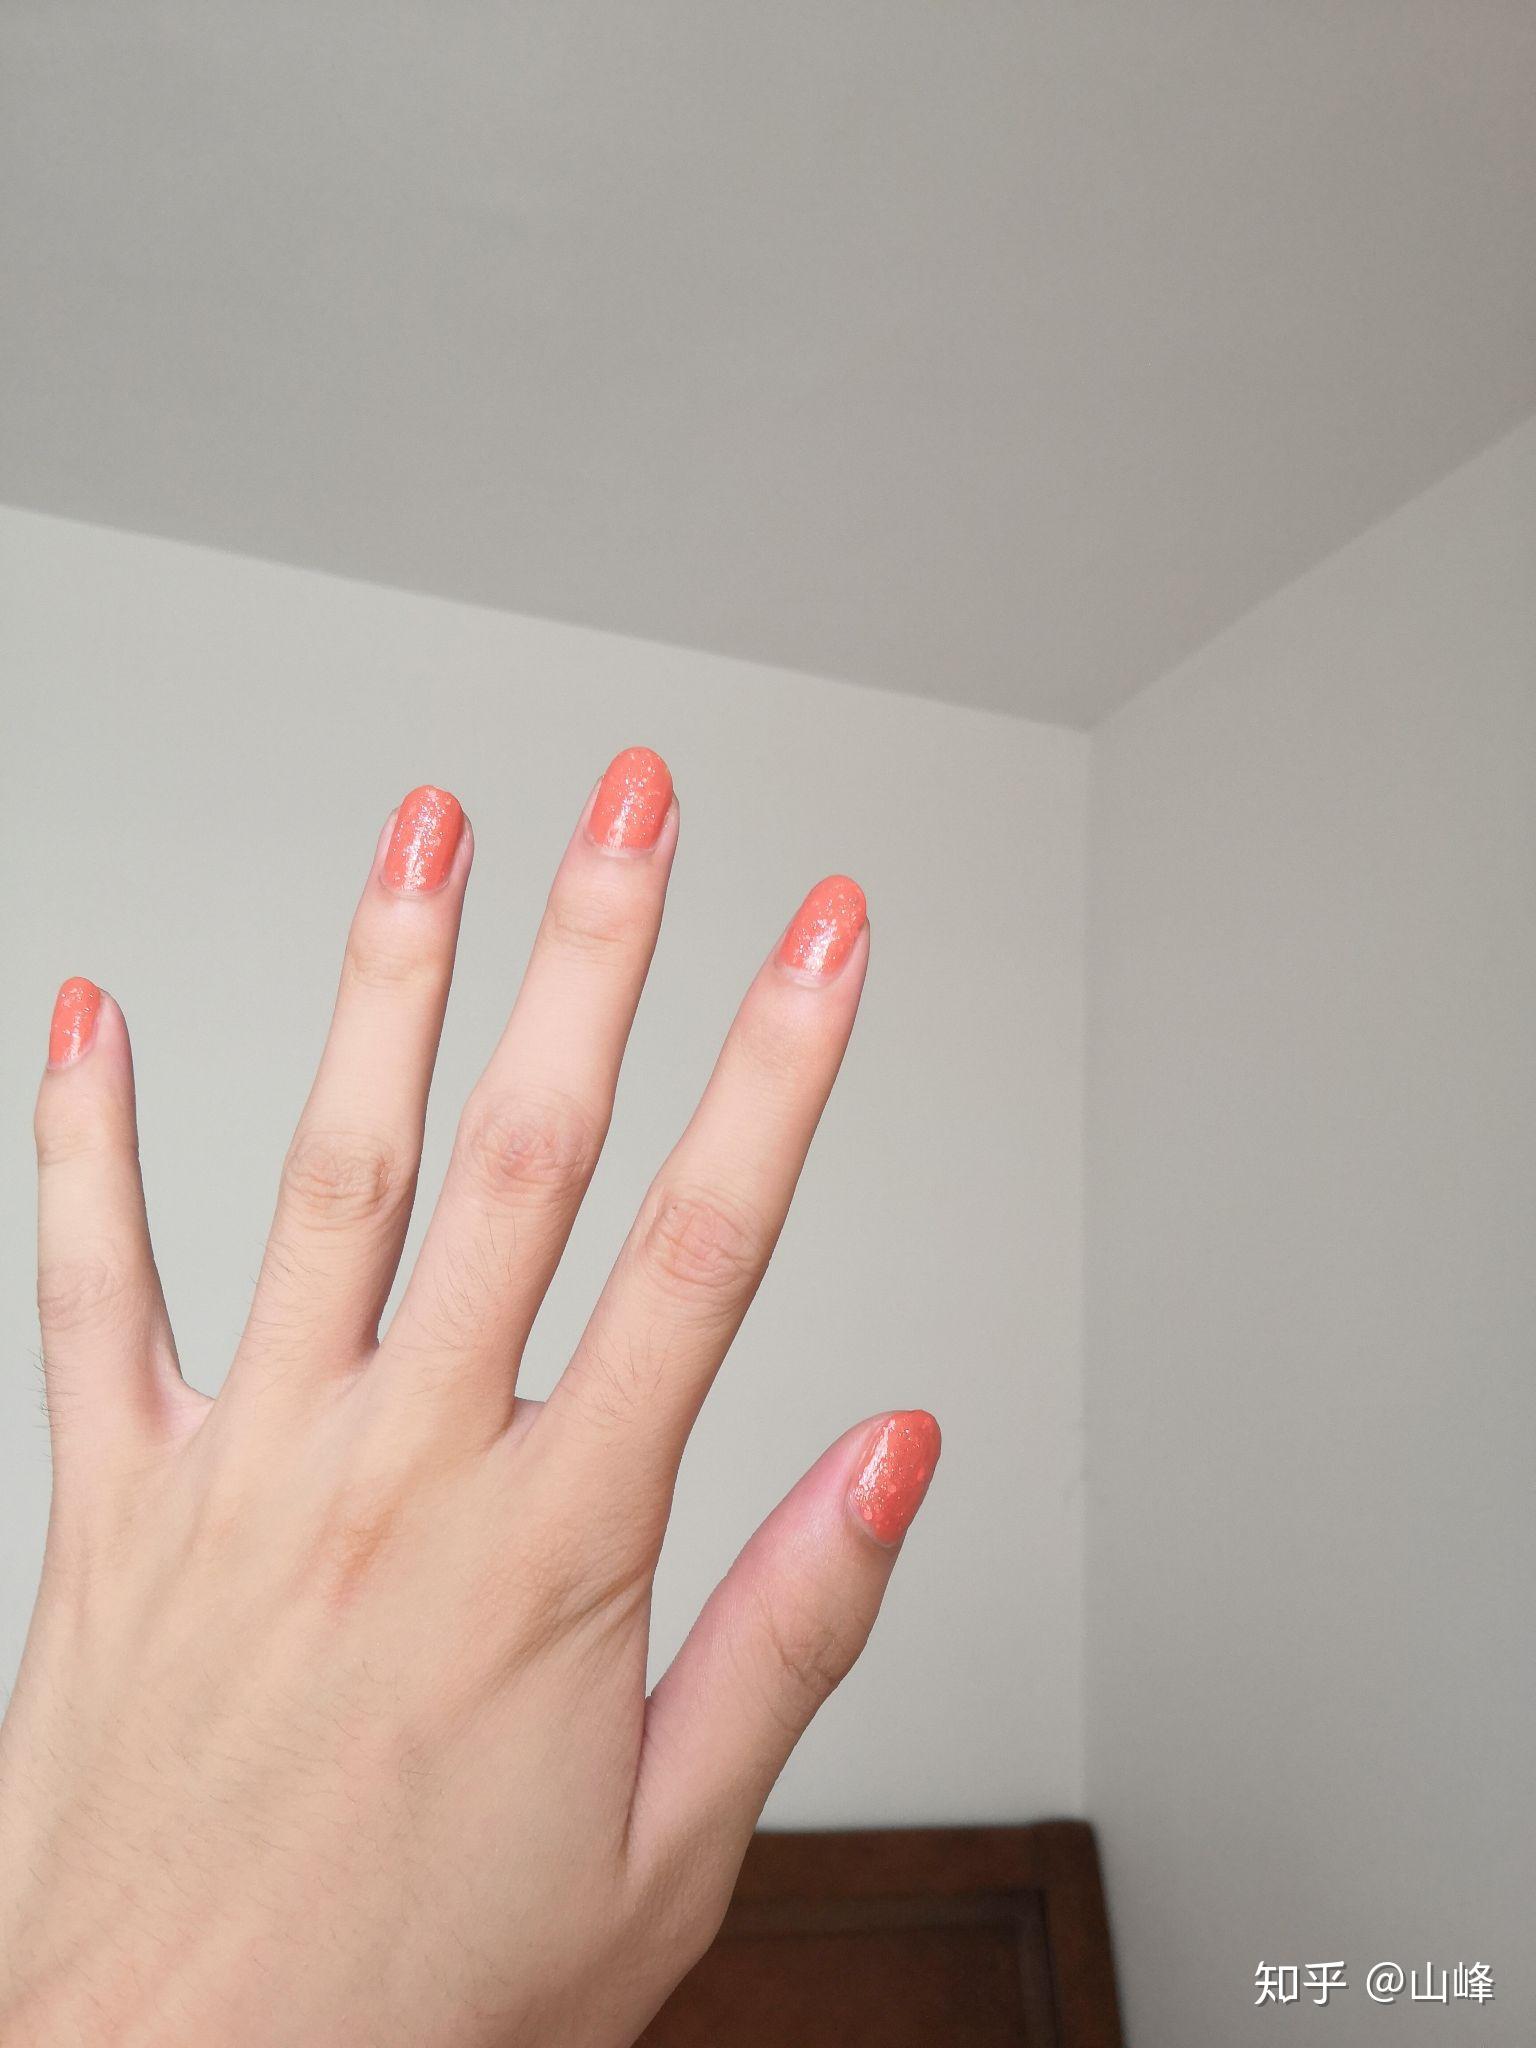 涂什么颜色的指甲油会显得手比较白？ - 知乎